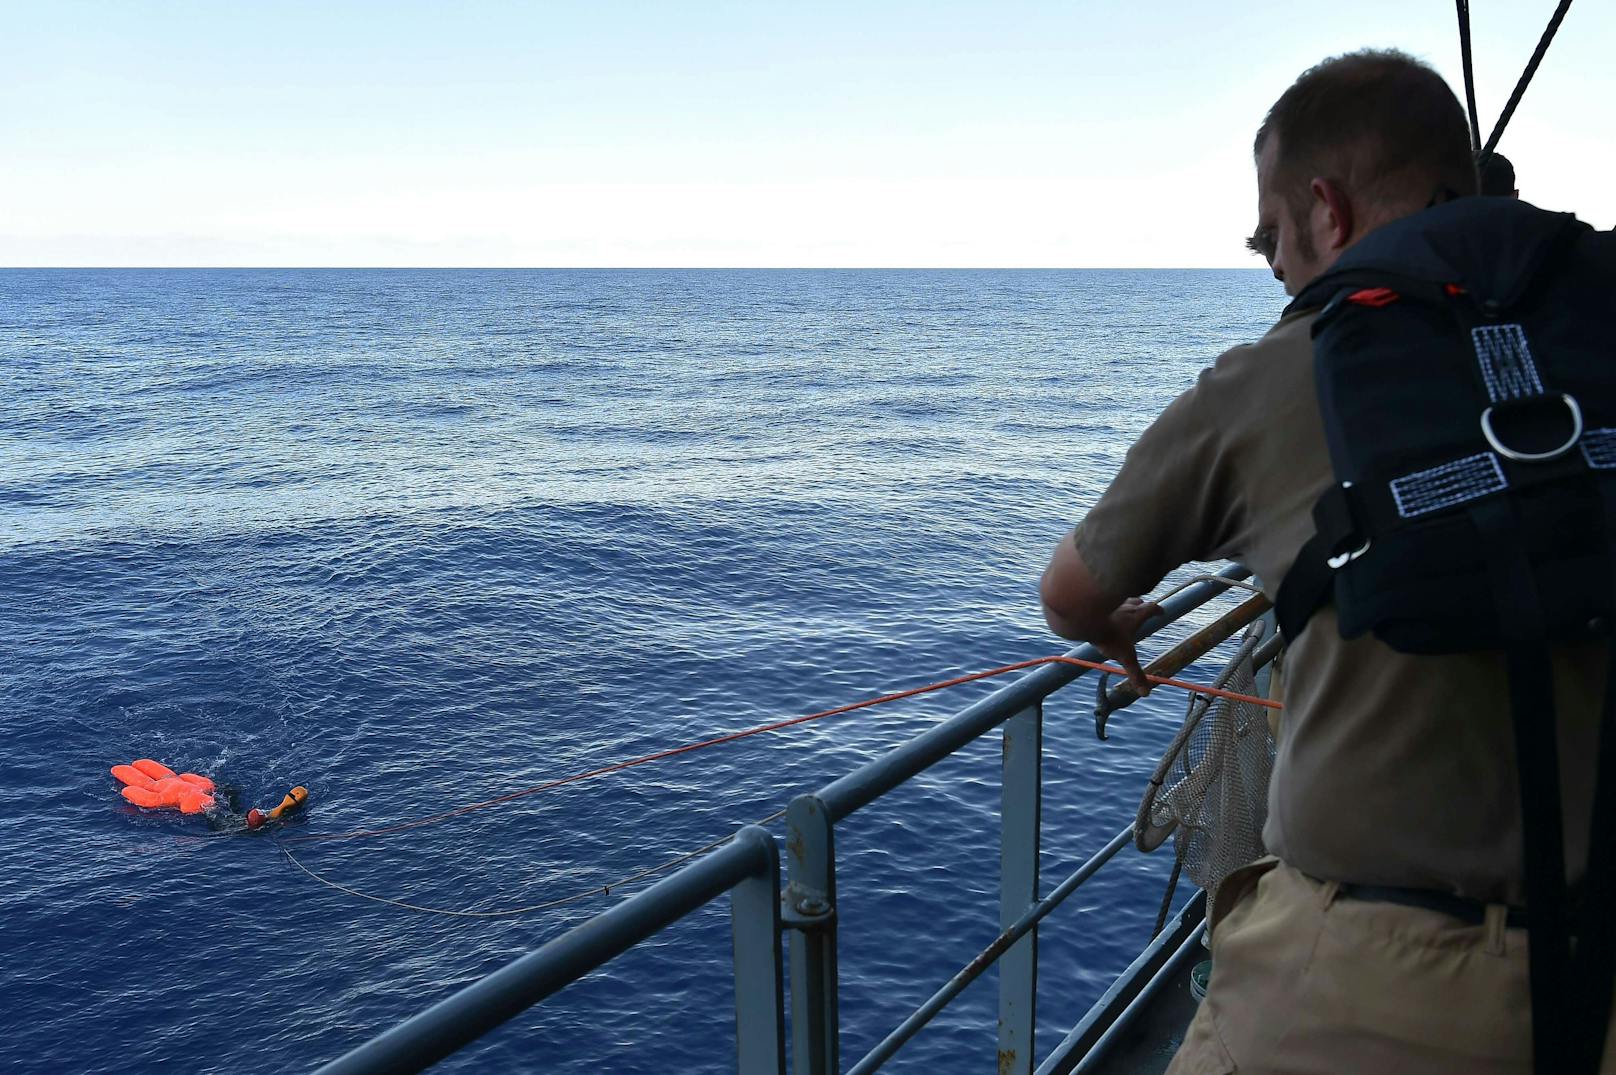 Archivbilder vom Einsatz der EU Naval Force im Mittelmeer, aufgenommen 2015 bis 2016